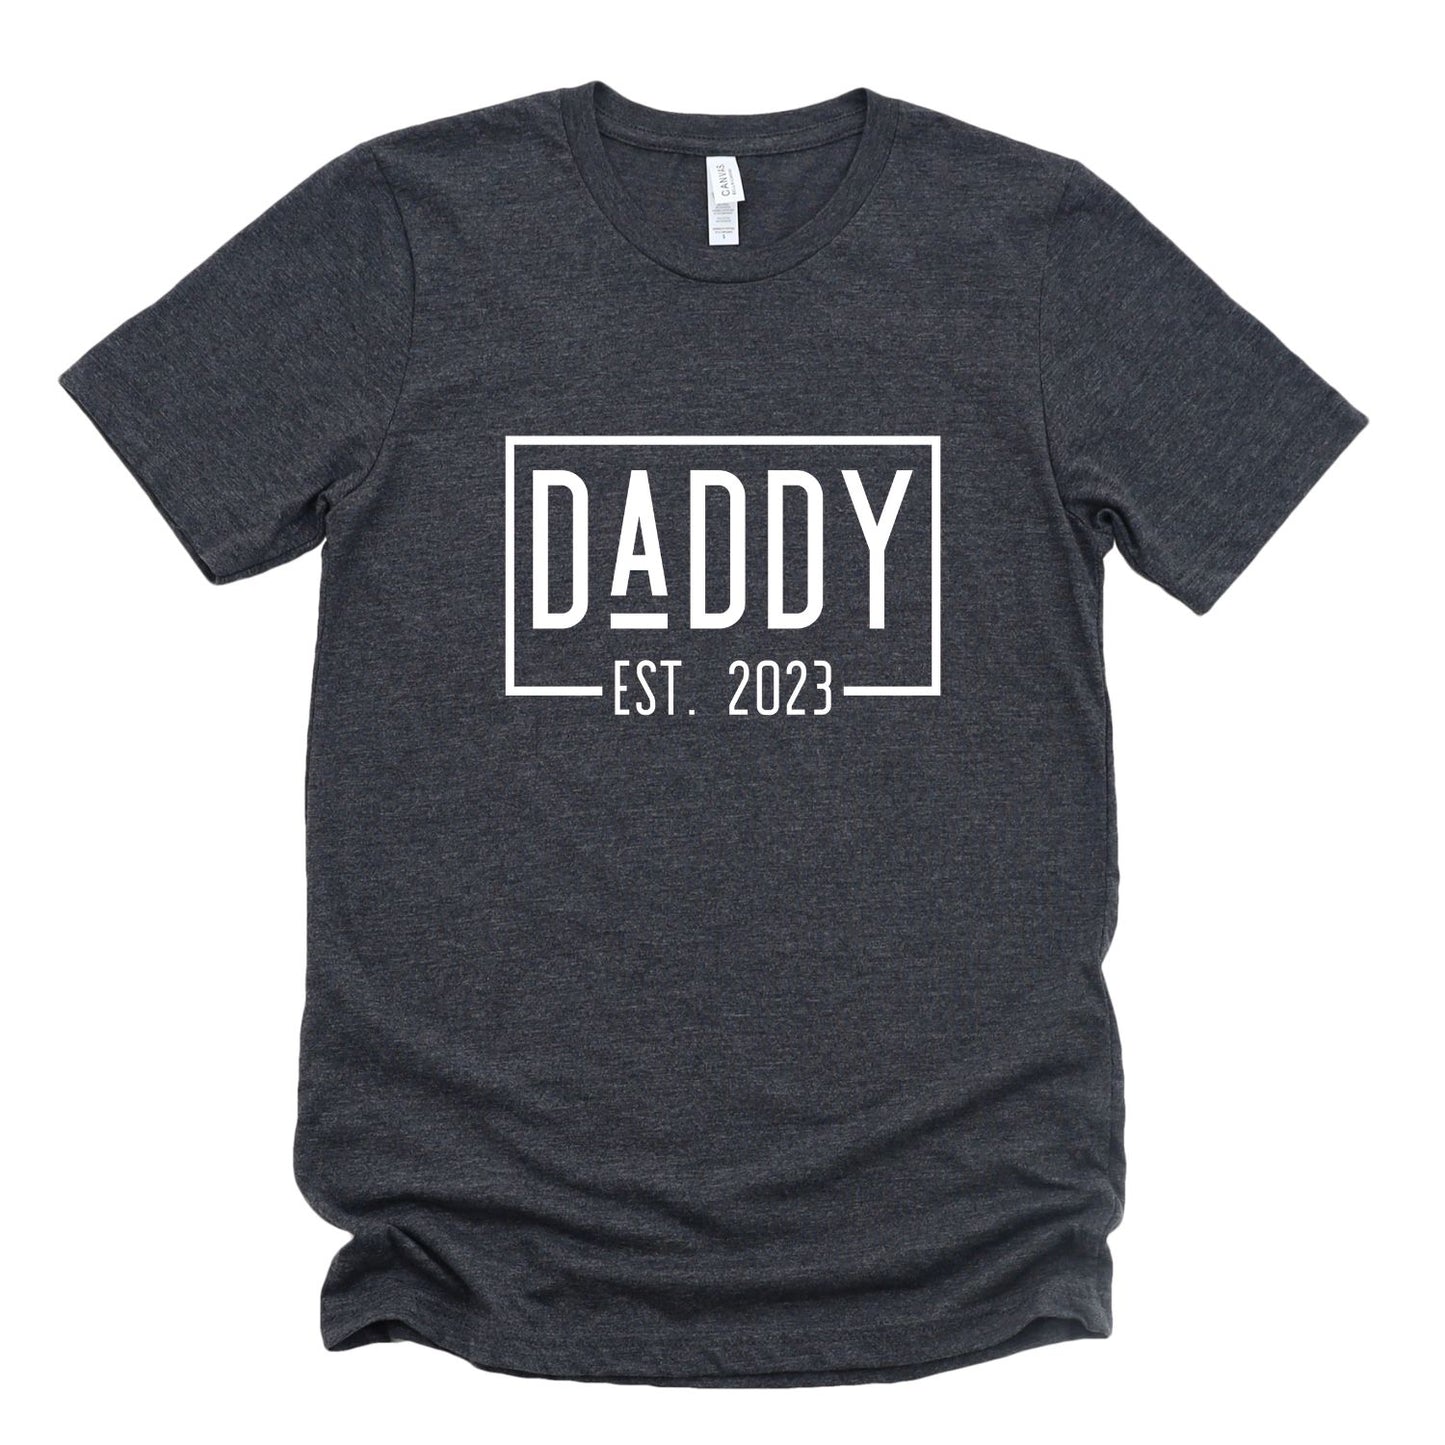 DADDY EST 2023